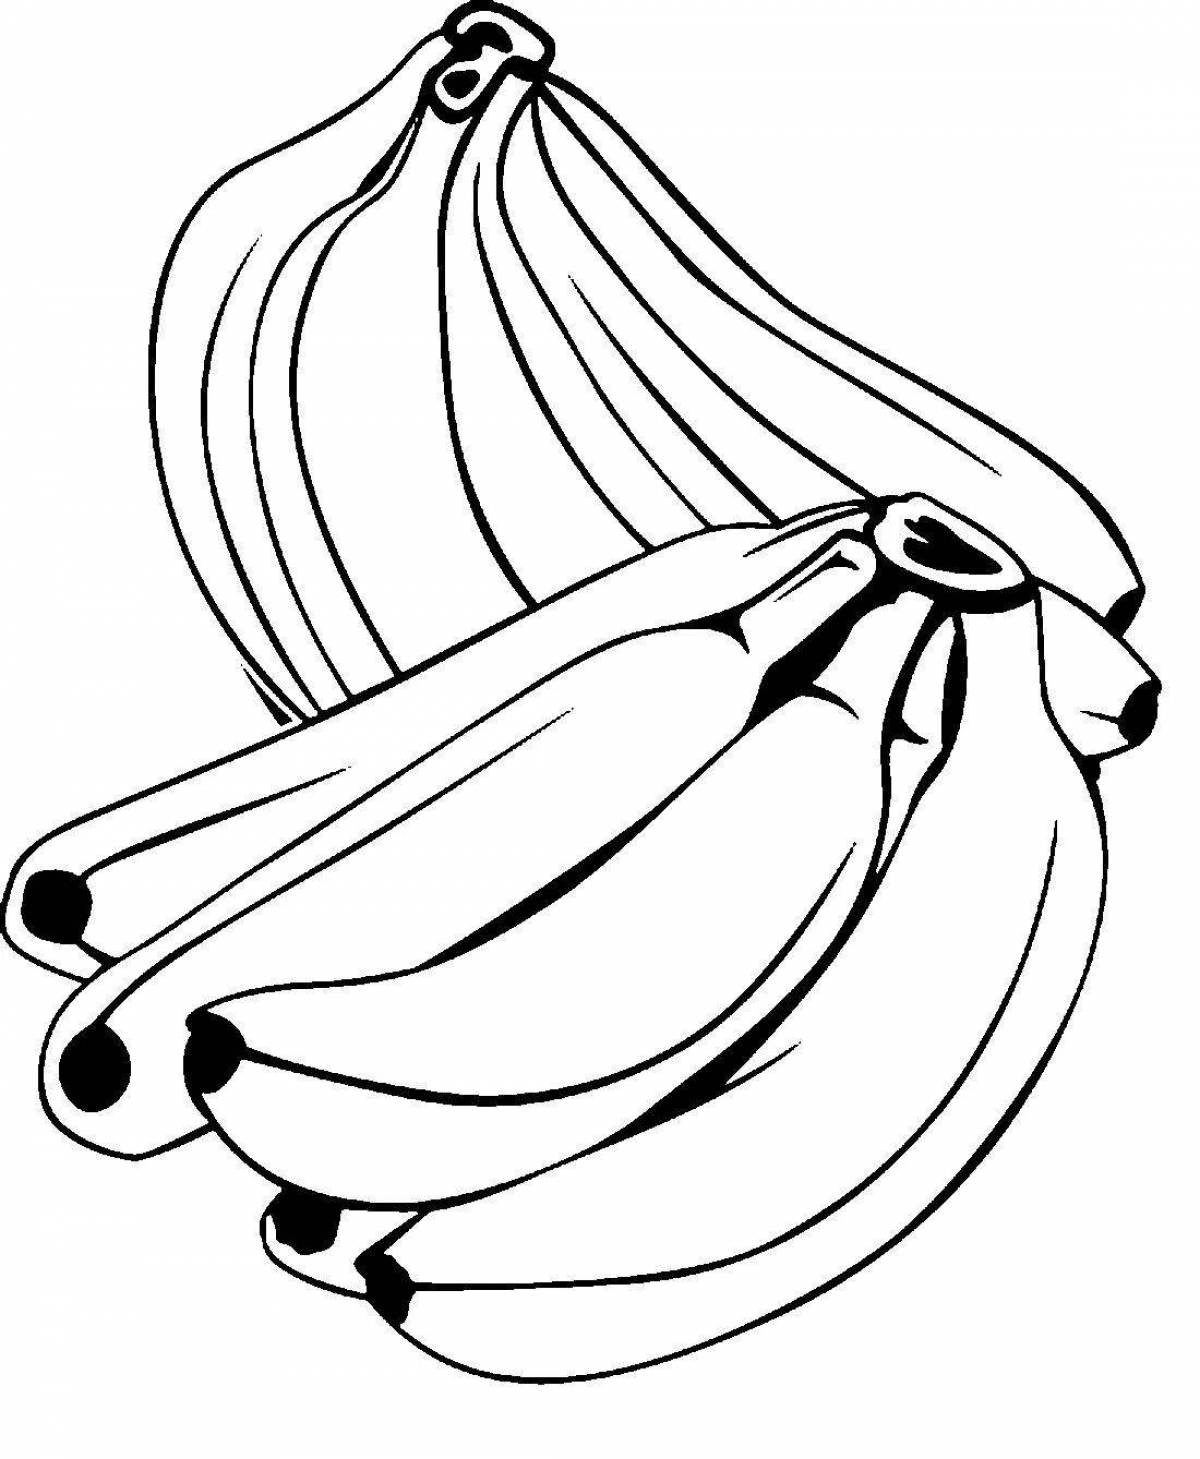 Banana coloring